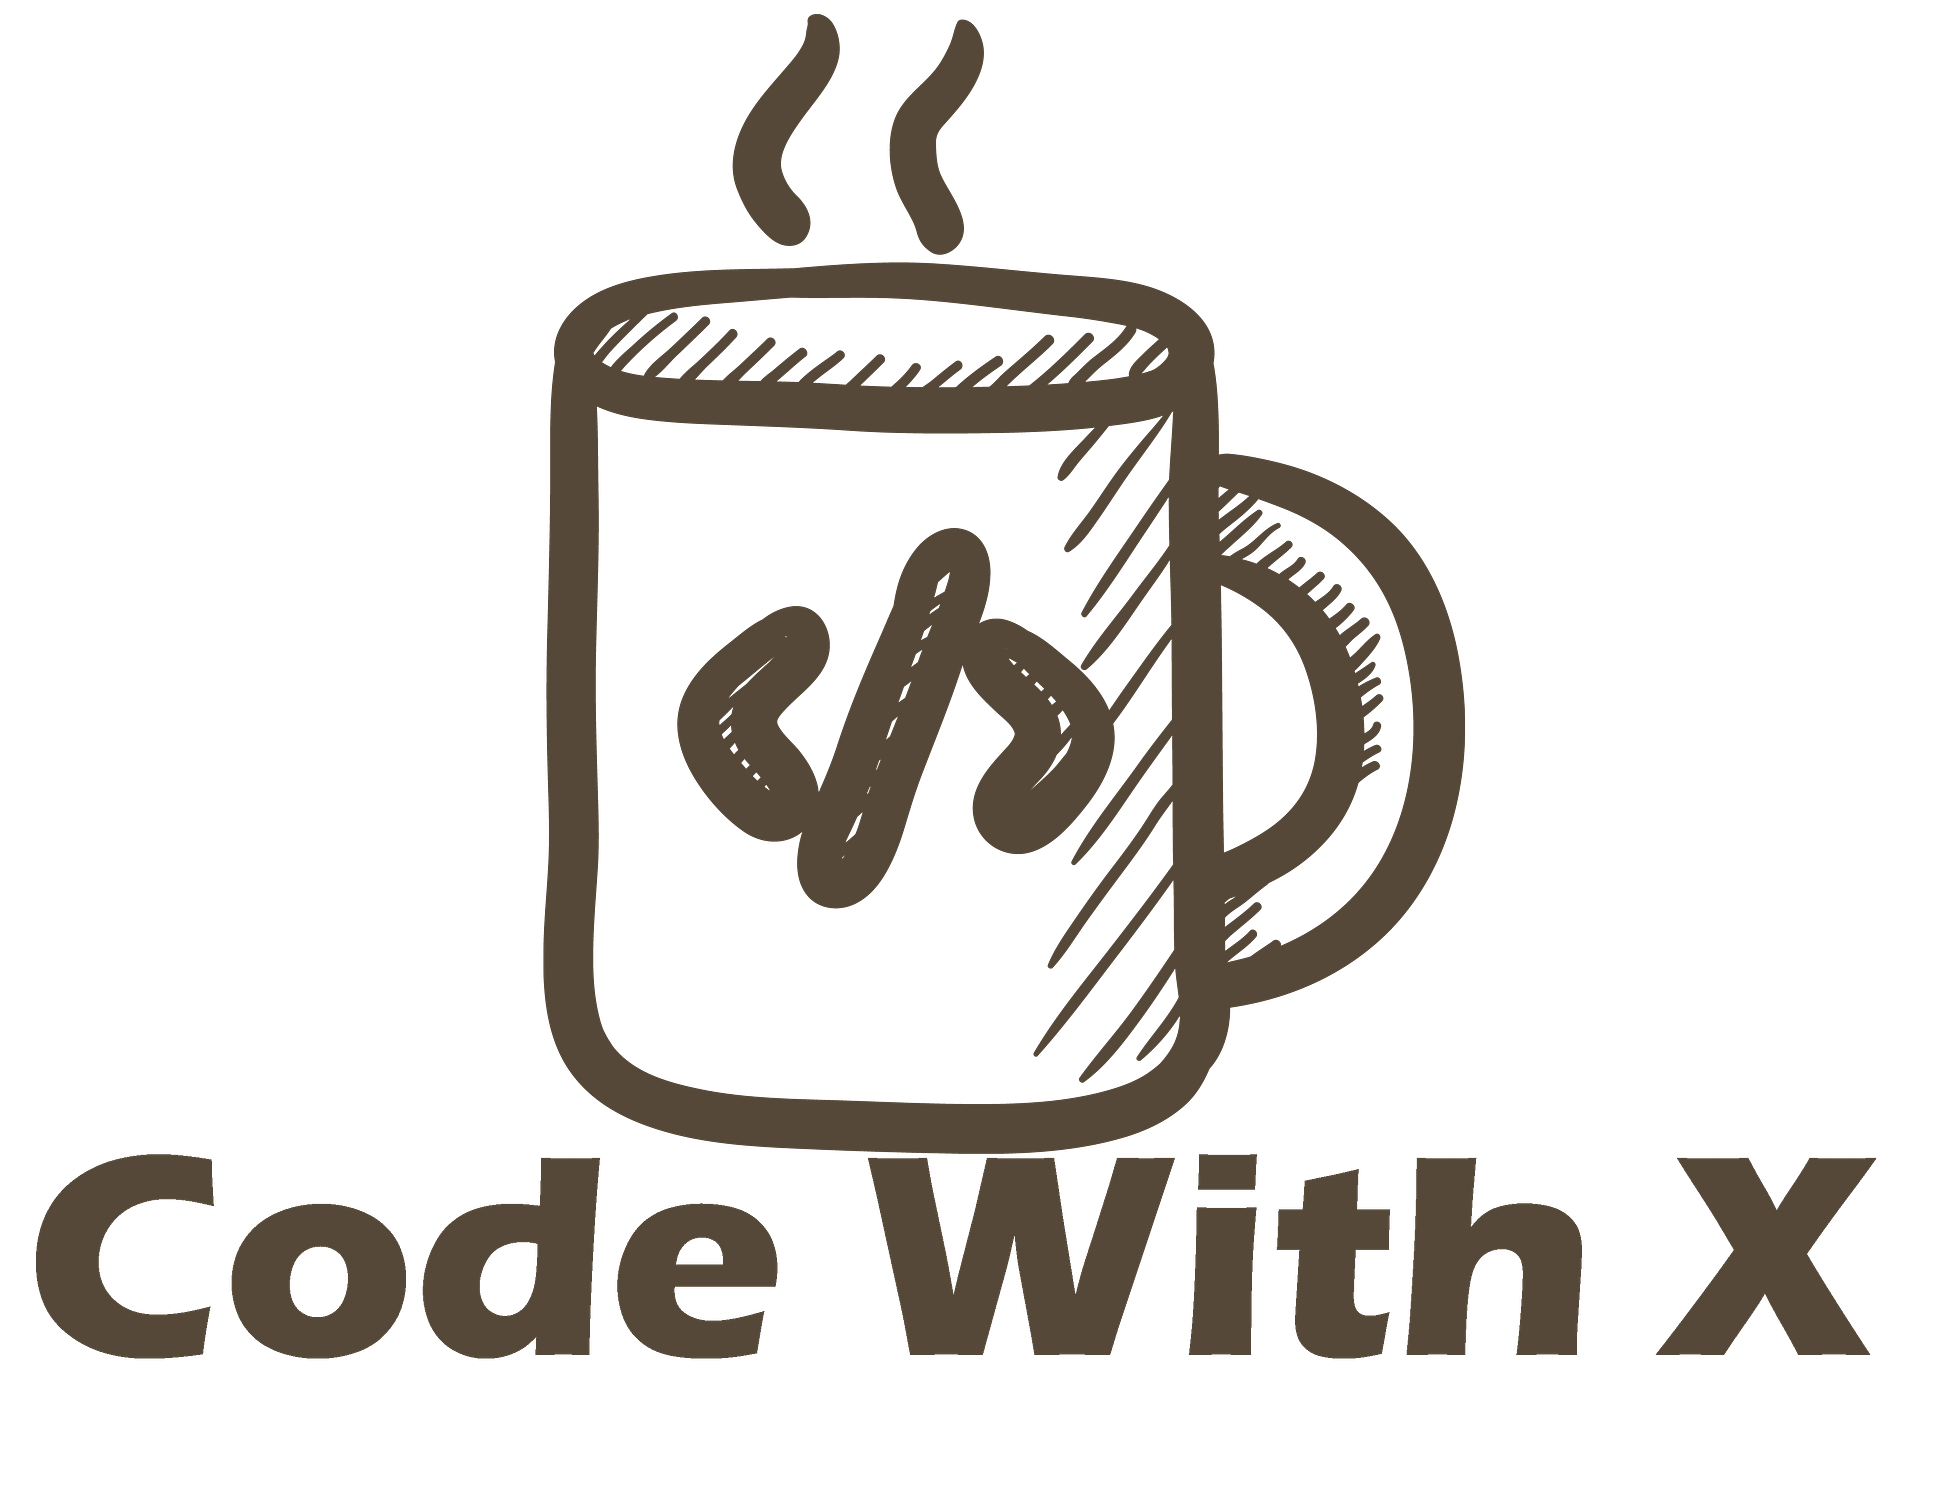 xcode c++ tutorial